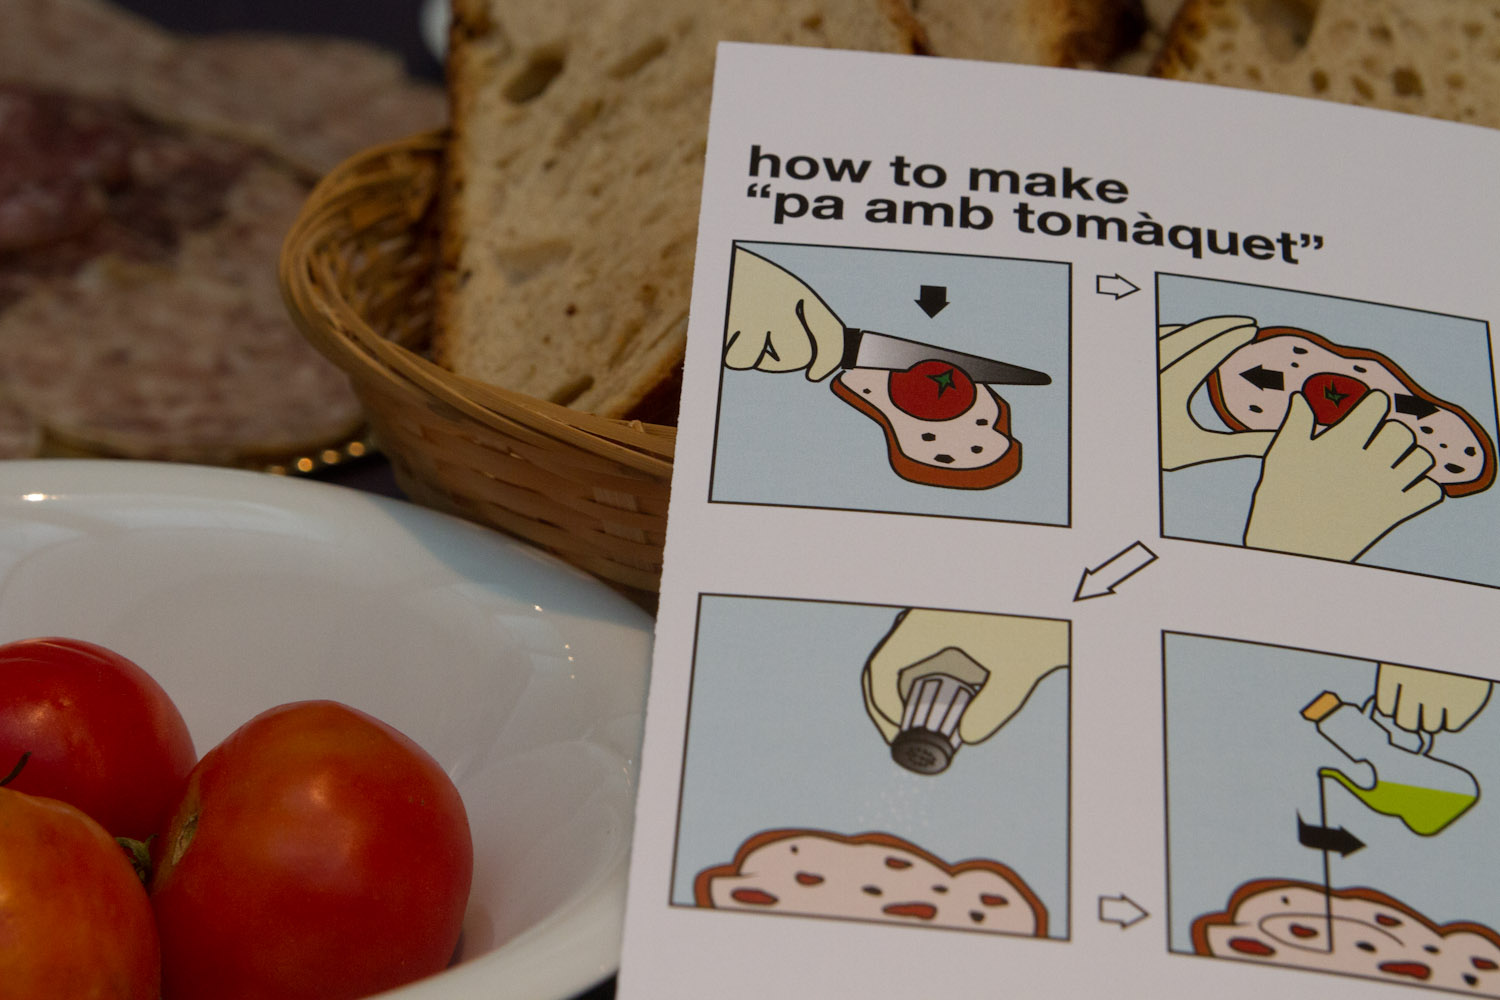 Instrucciones para preparar pa amb tomàquet, cortesía de Turismo de Gerona/Costa Brava, en el TBEX Girona 2012